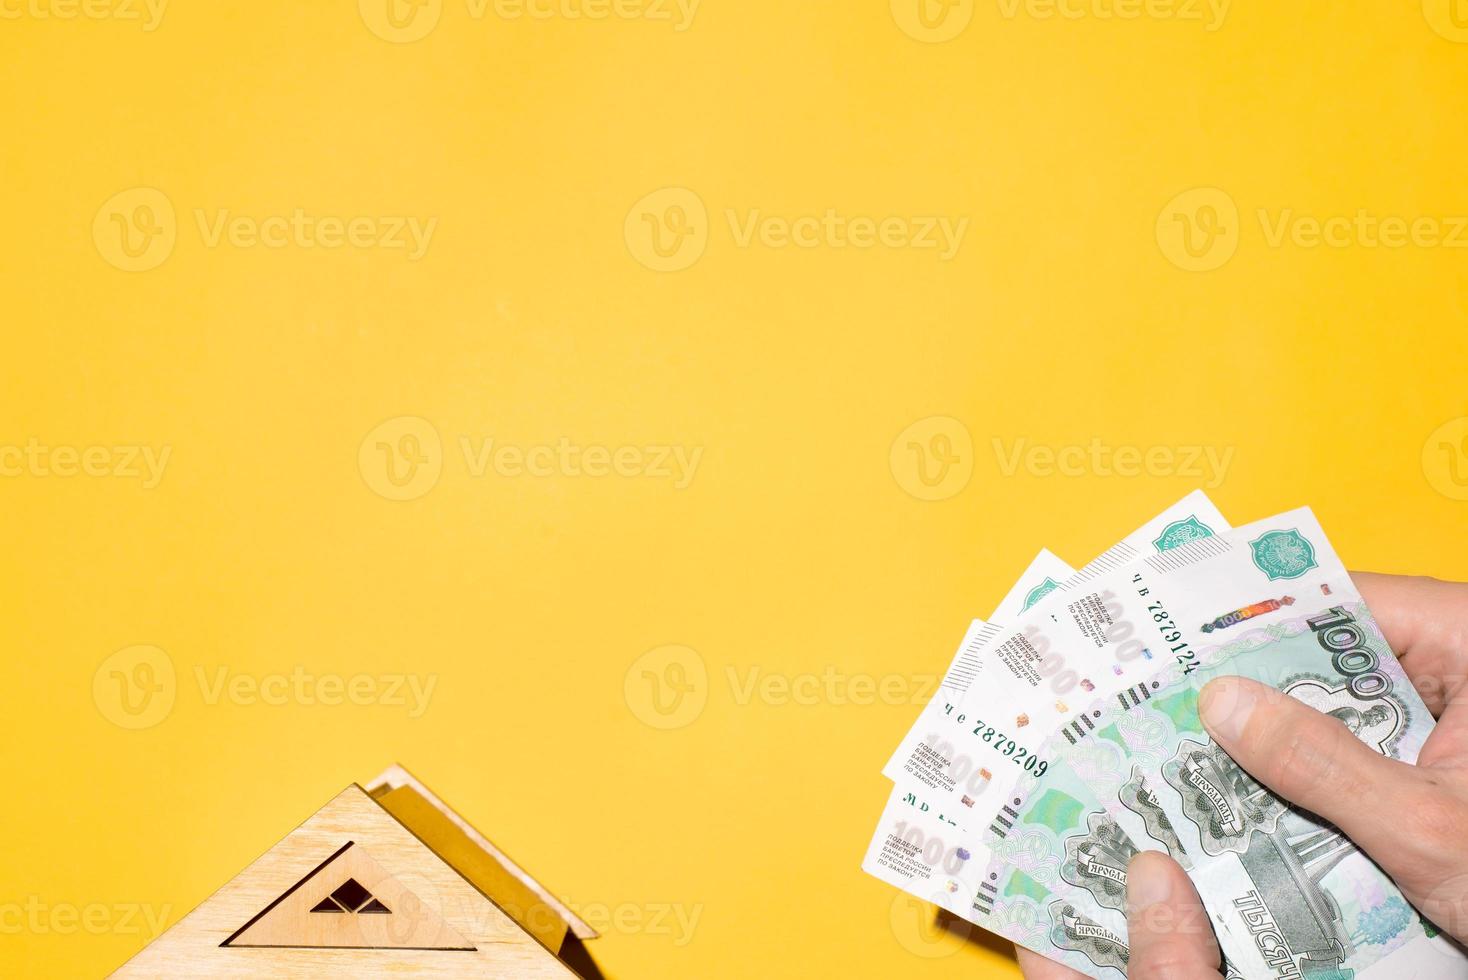 Modell des Holzdaches des Hauses und der Hände des Mannes, die Geld halten, Draufsicht. das konzept des kaufs von immobilien, stromrechnungen, versicherungen, investitionen. gelber hintergrund, kopierraum foto